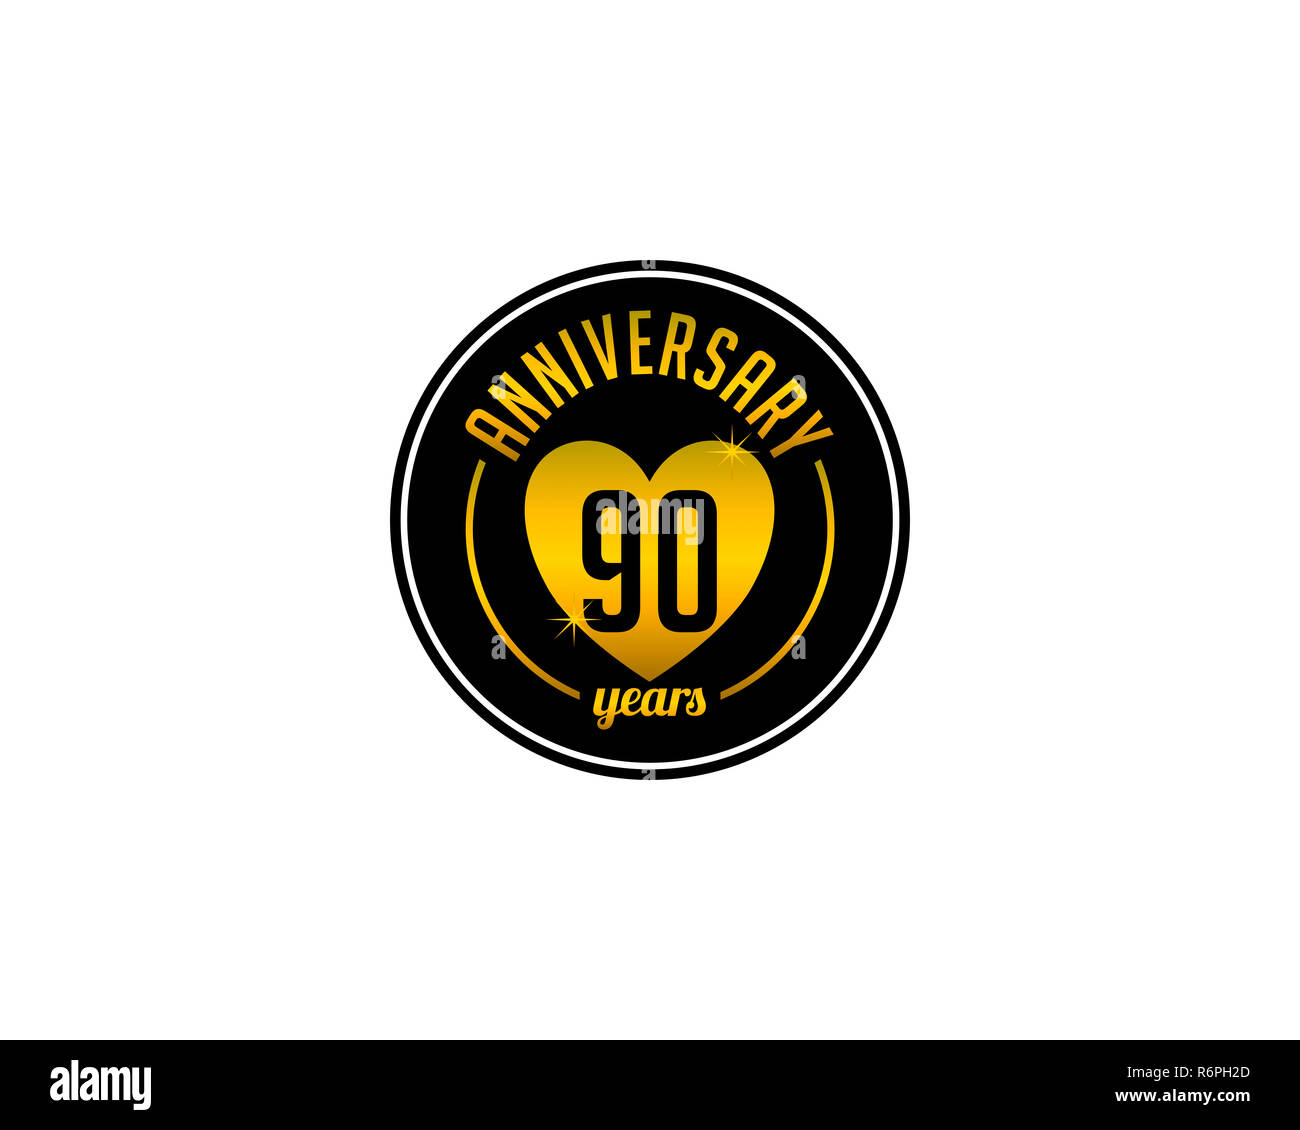 ninety years anniversary badge Stock Photo